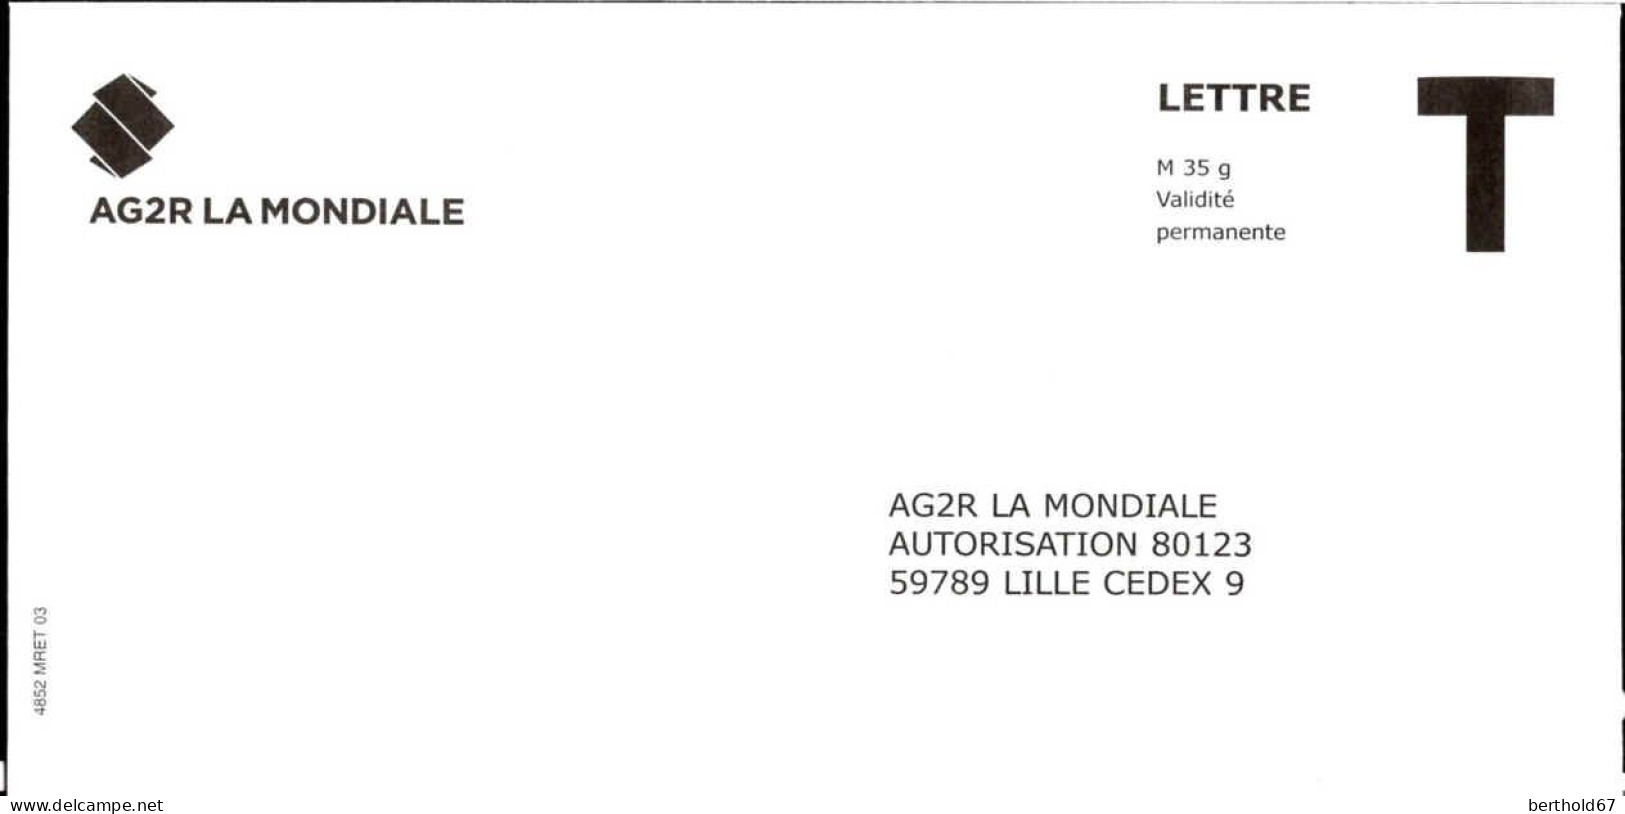 France Entier-P N** (7014) AG2R La Mondiale Autorisation 80123 Lettre M35g V.permanente - Kaarten/Brieven Antwoorden T